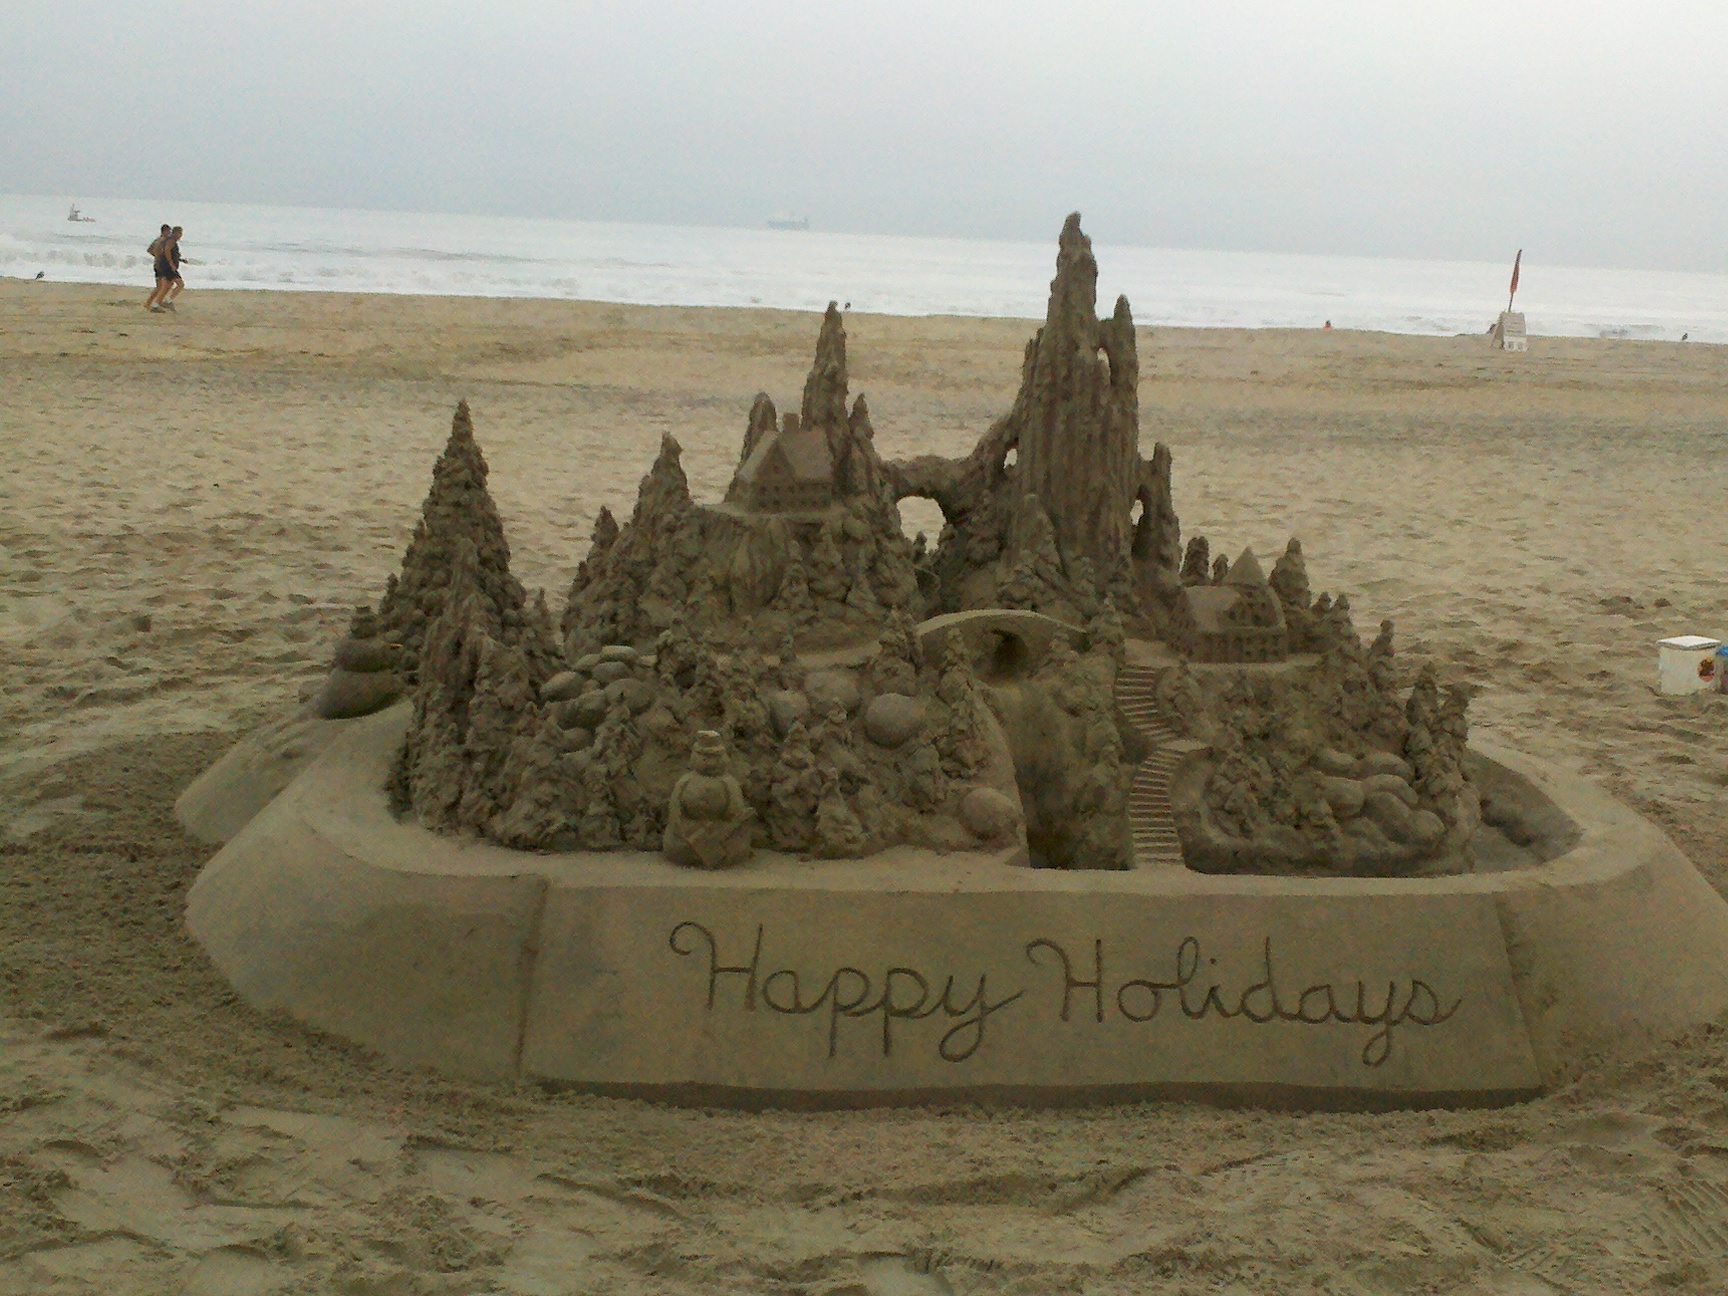 SD_Coronodo Beach_Sand Sculpture_Nov_30_2012